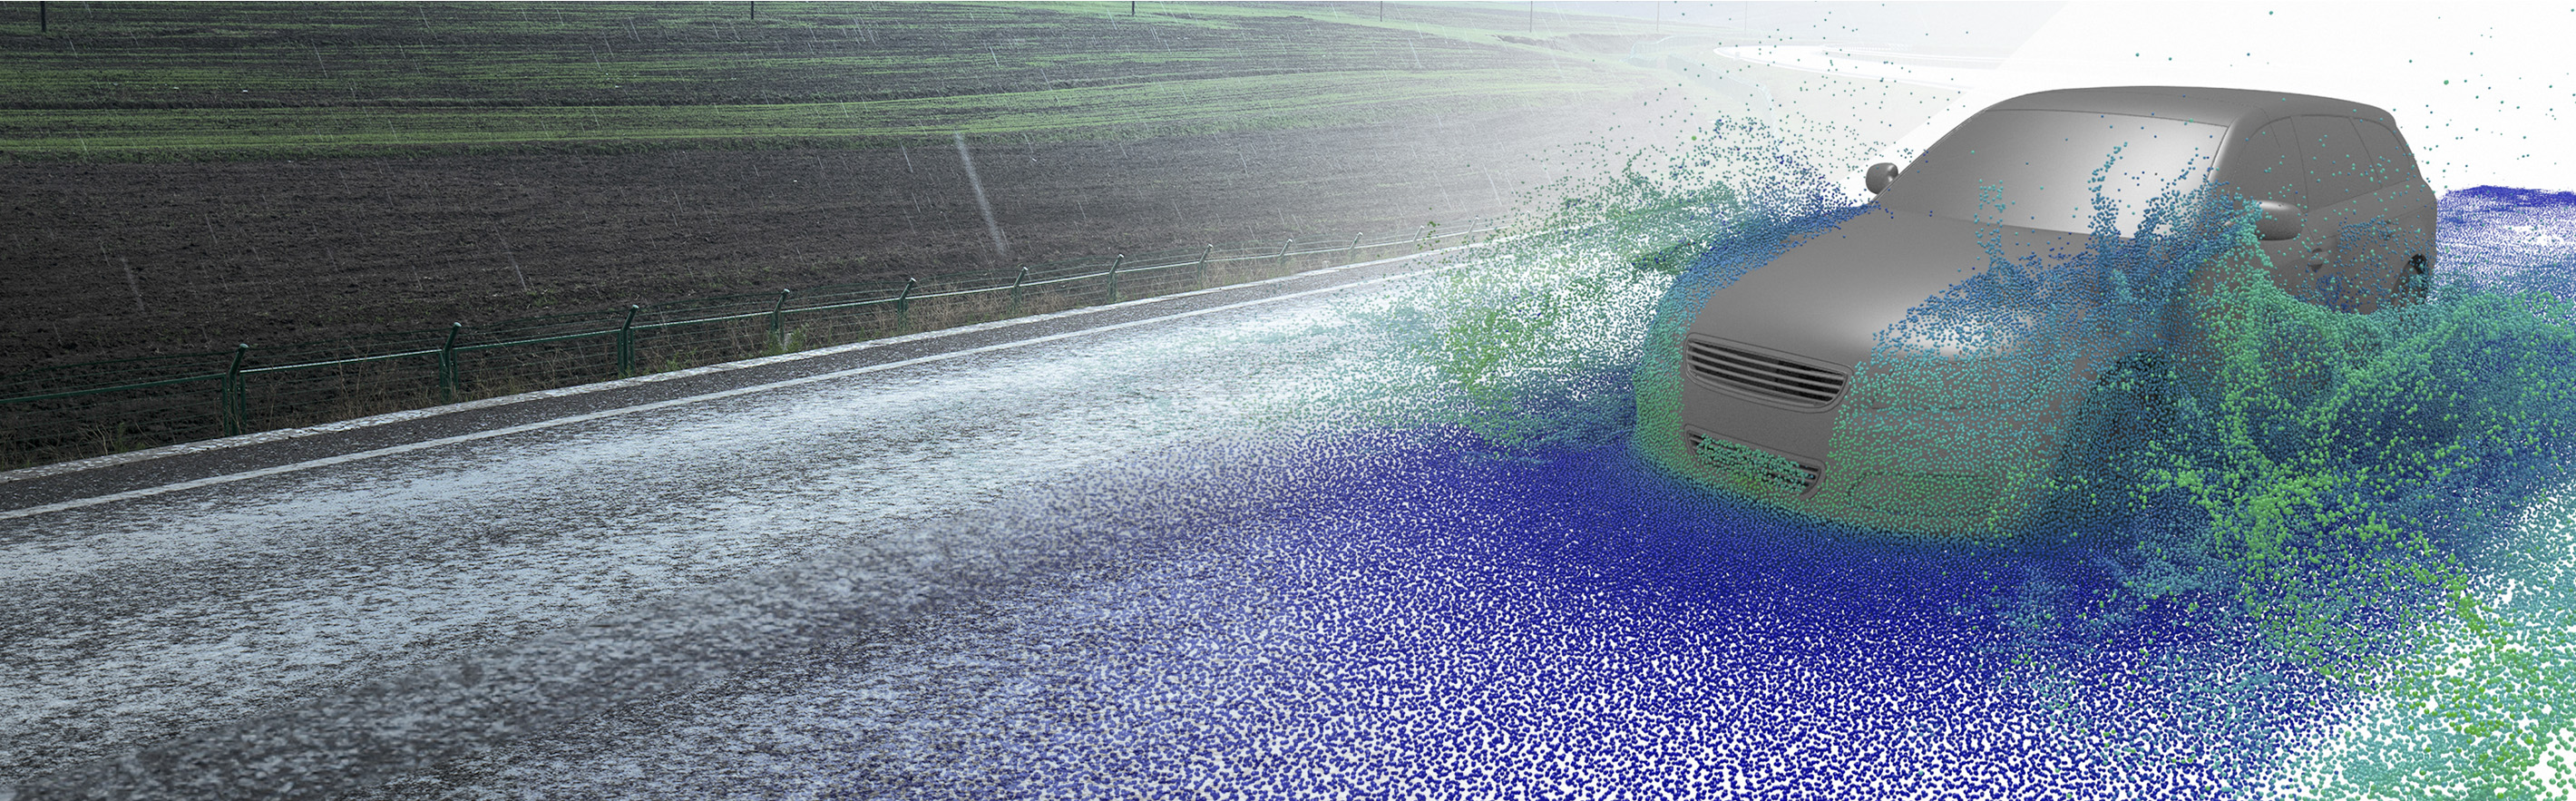 MESHFREE car water crossing simulation